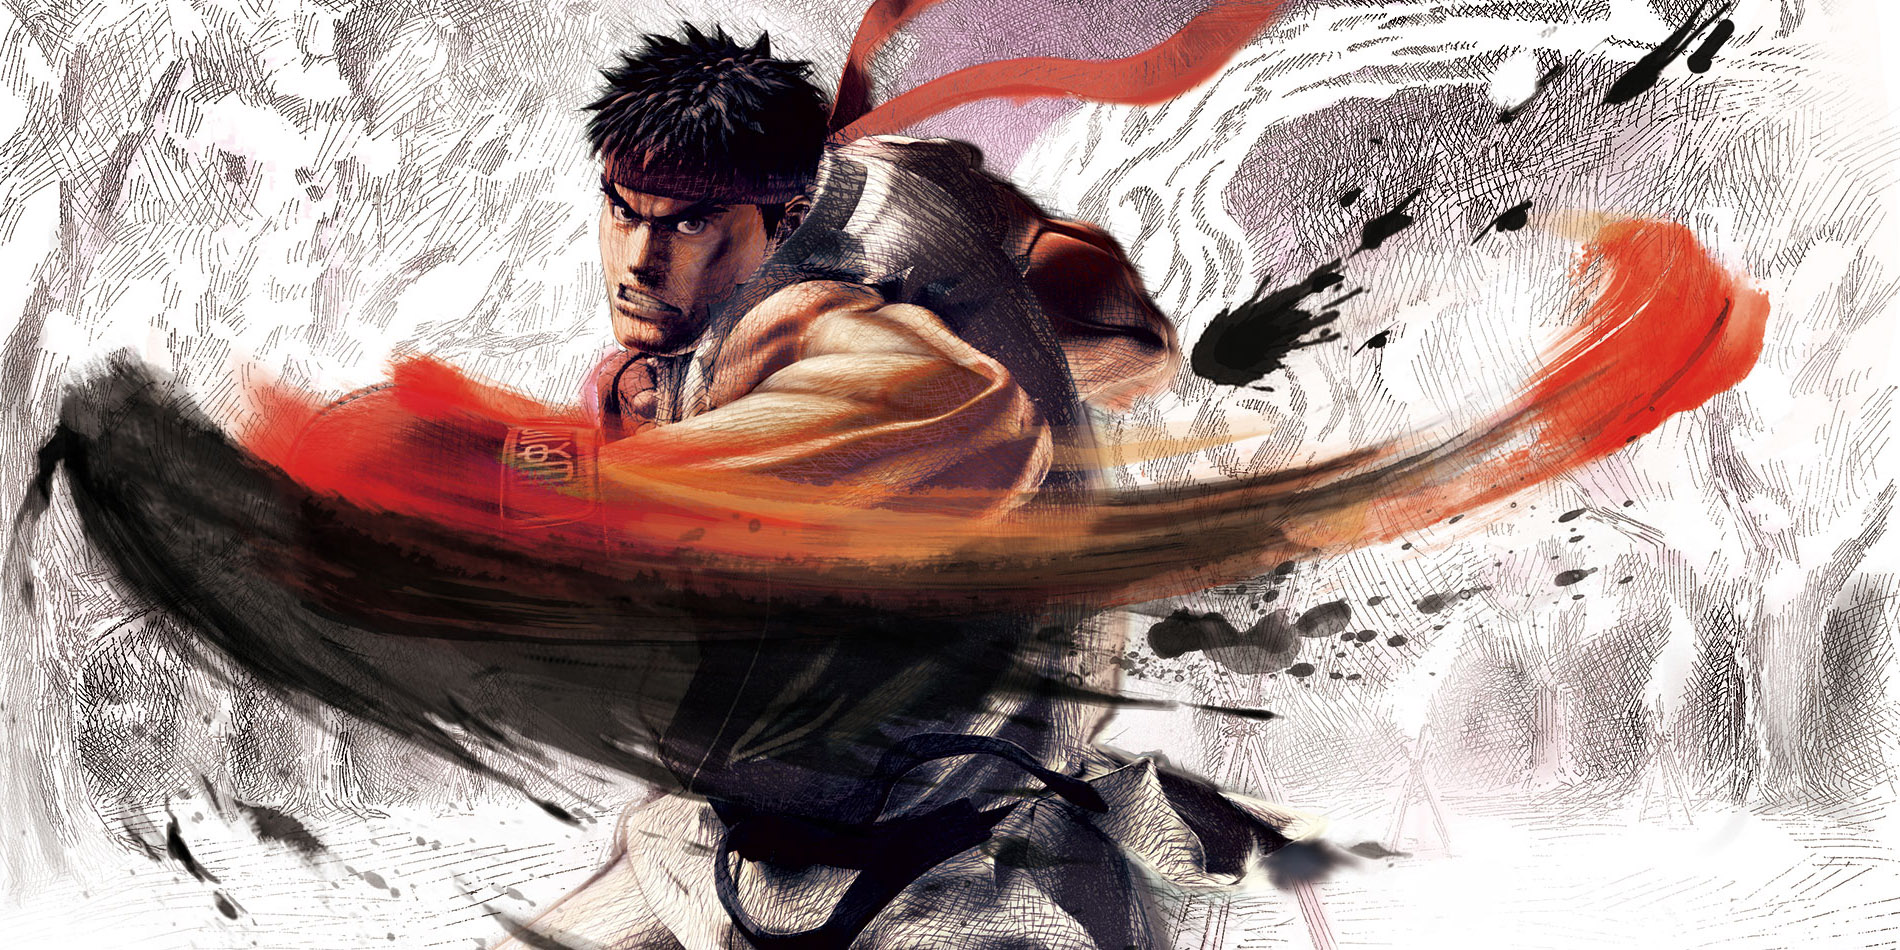 ryu street fighter fond d'écran,kung fu,illustration,personnage fictif,oeuvre de cg,conception graphique